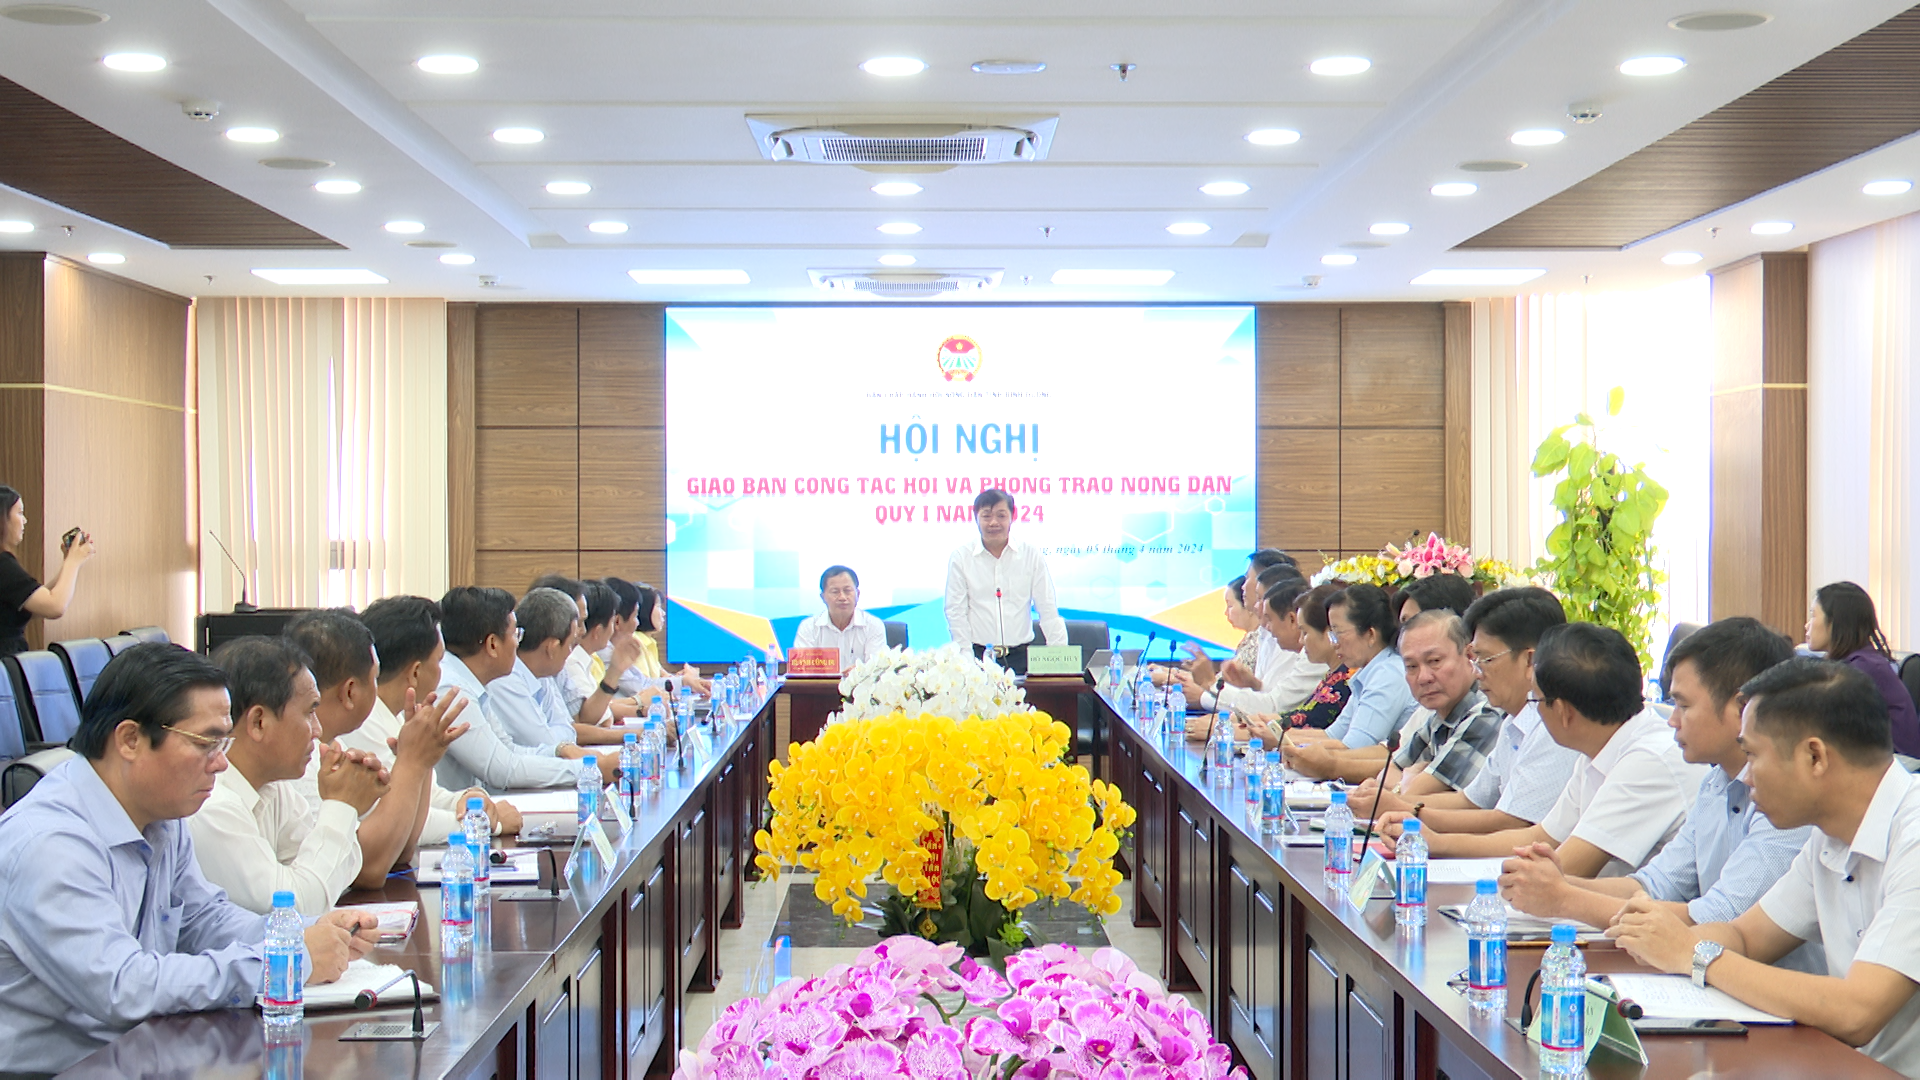 Hội nghị giao ban công tác Hội, phong trào Nông dân tỉnh Bình Dương tại huyện Bàu Bàng